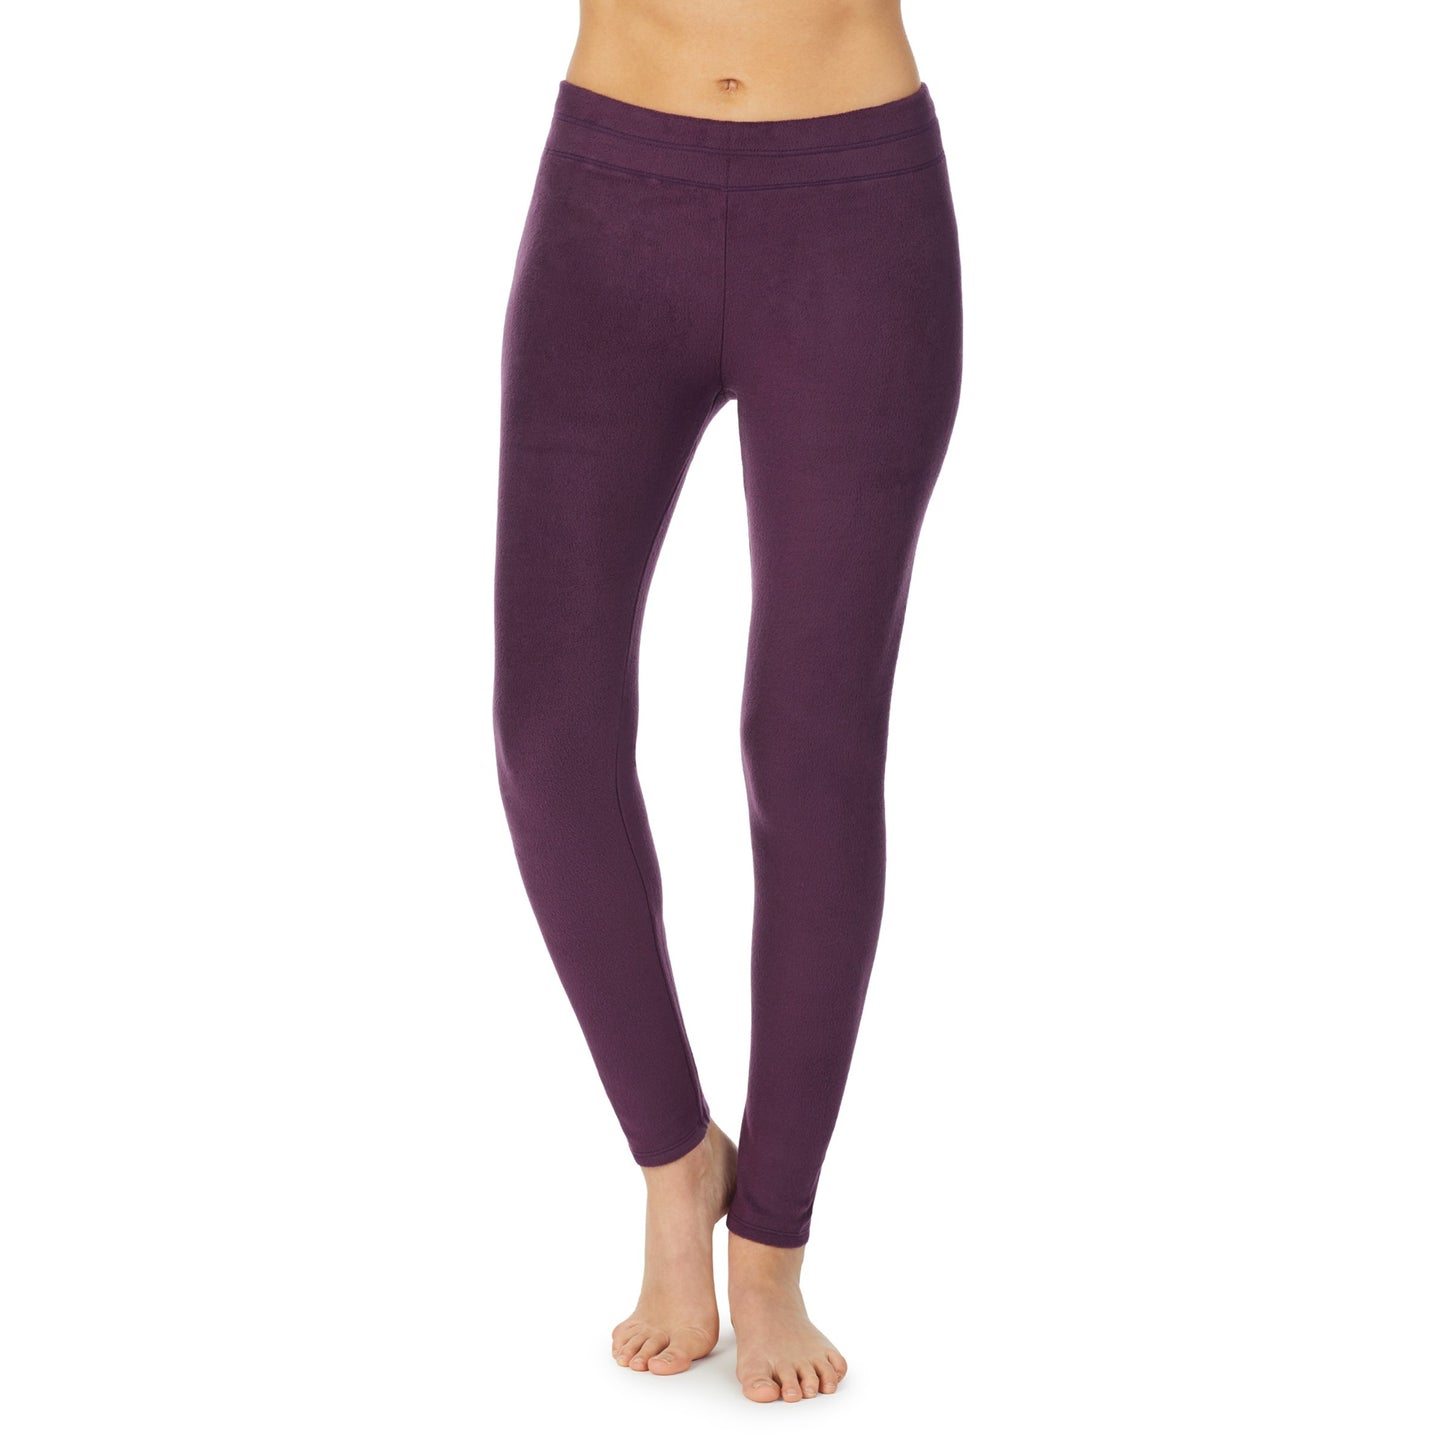 Boysenberry Purple;Model is wearing size S. She is 5’9”, Bust 32”, Waist 25.5”, Hips 36”.@A lady wearing fleecewear with stretch legging